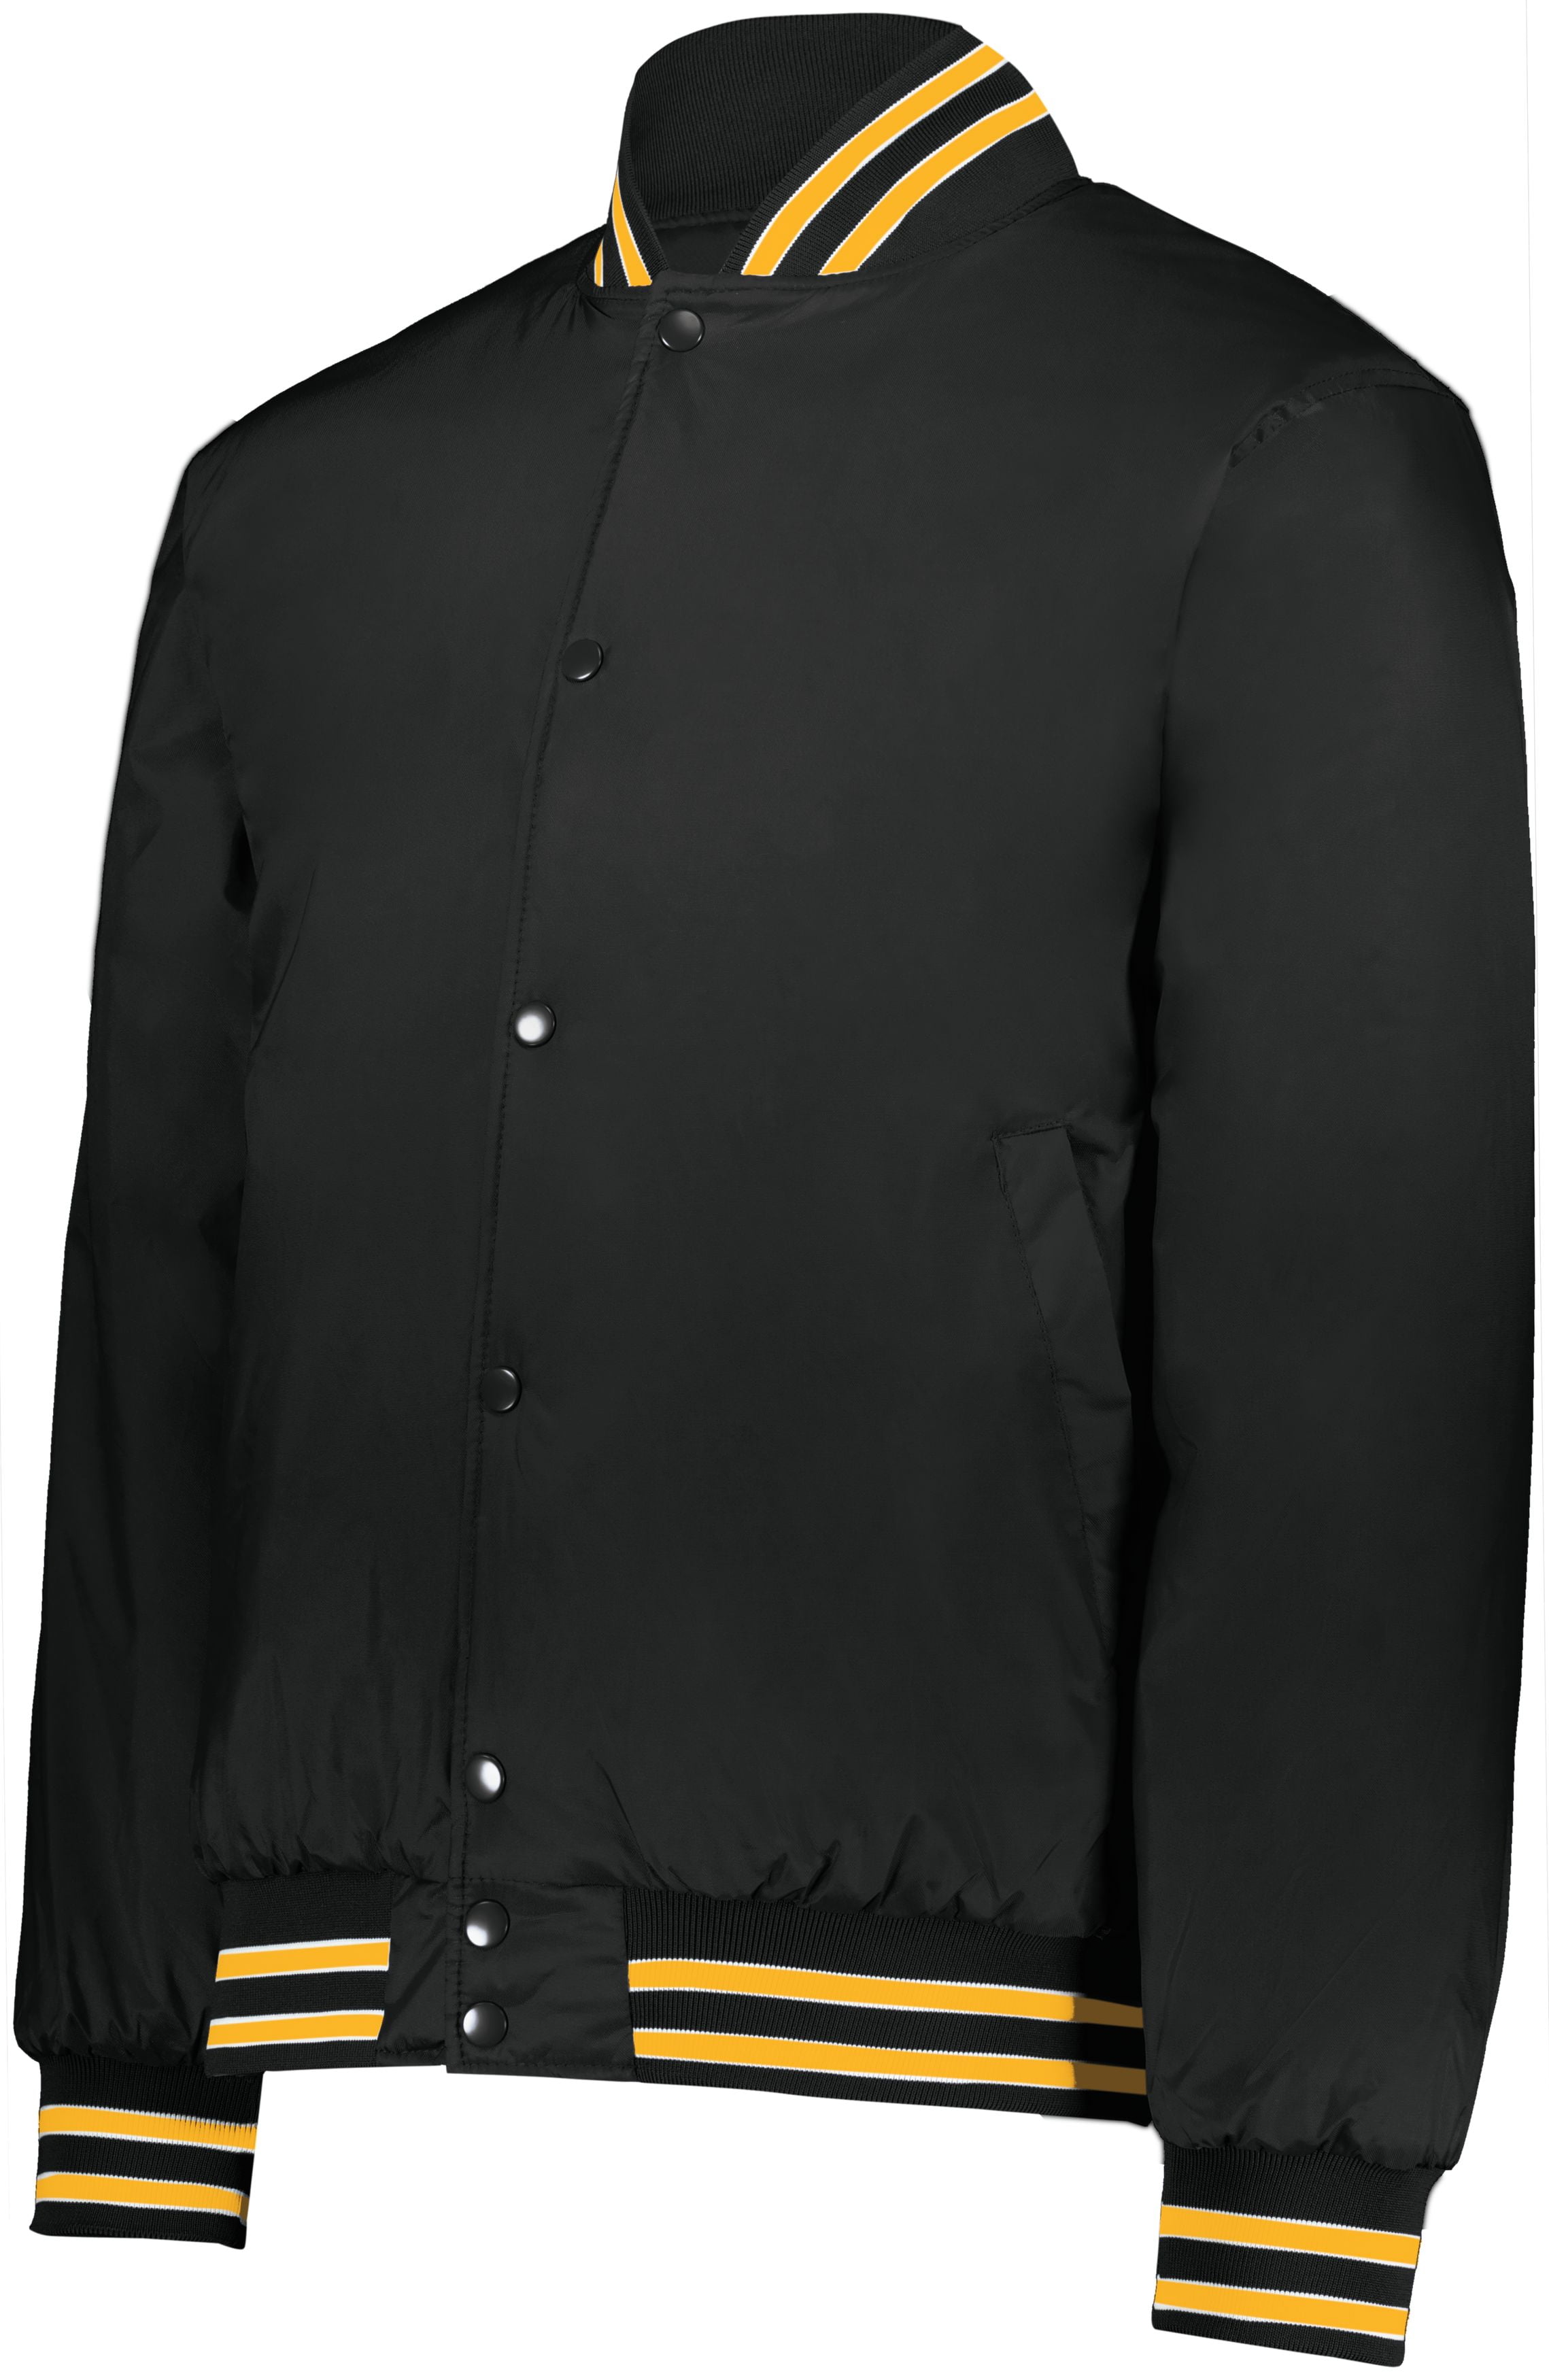 Artist Unknown Teddy Coat for Women, Y2k Jacket, Grunge Aesthetic